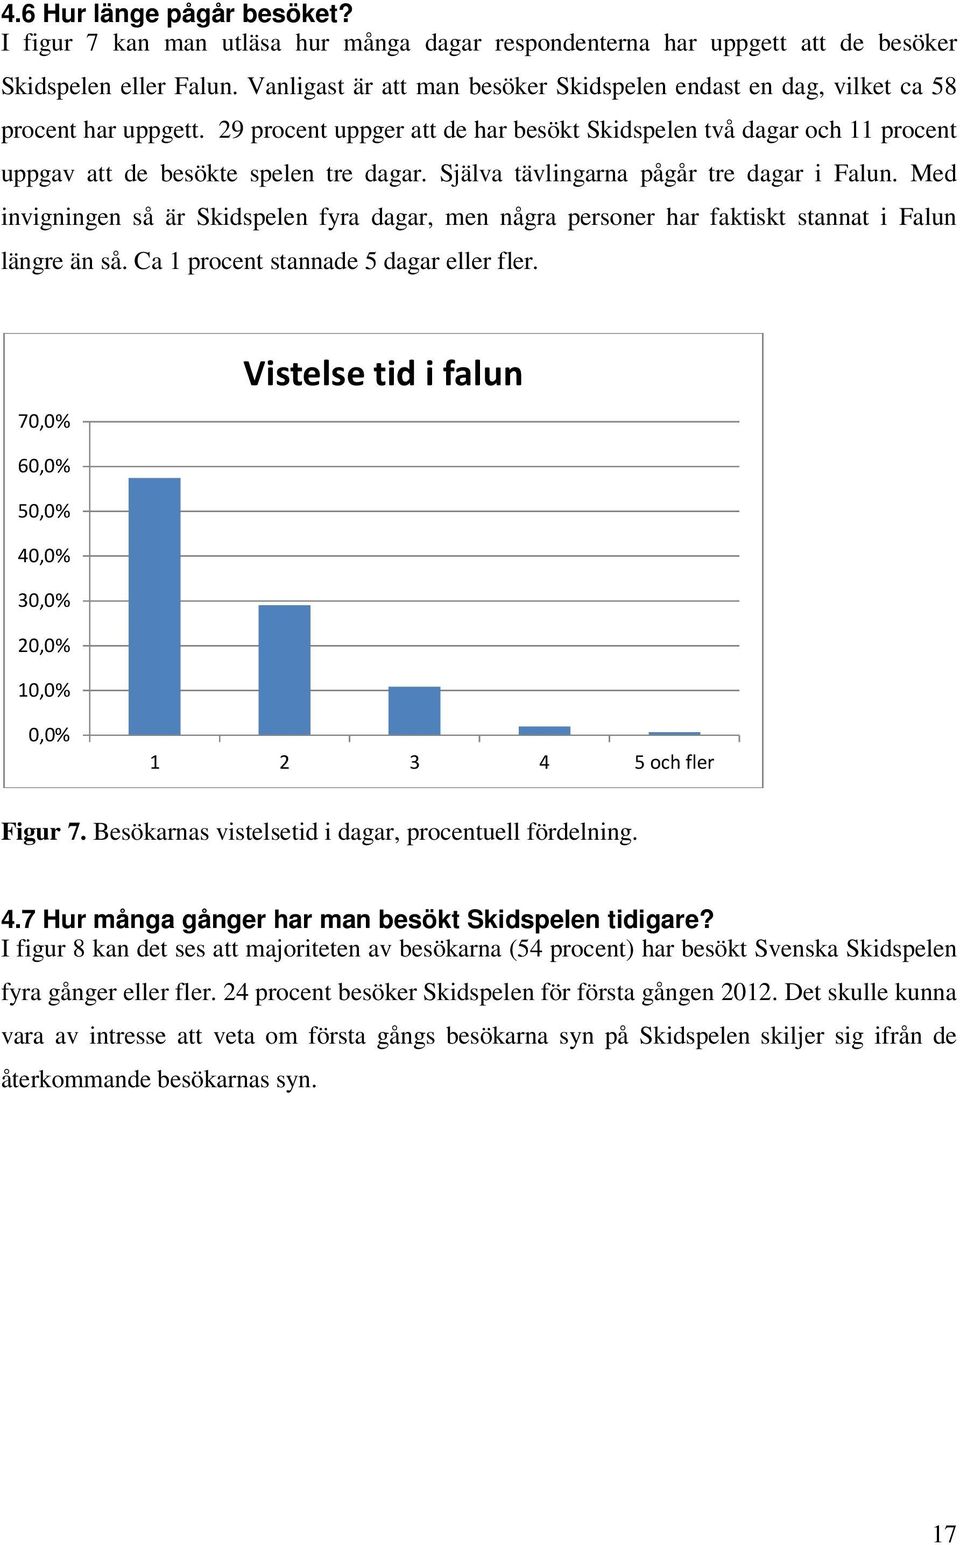 Själva tävlingarna pågår tre dagar i Falun. Med invigningen så är Skidspelen fyra dagar, men några personer har faktiskt stannat i Falun längre än så. Ca 1 procent stannade 5 dagar eller fler.